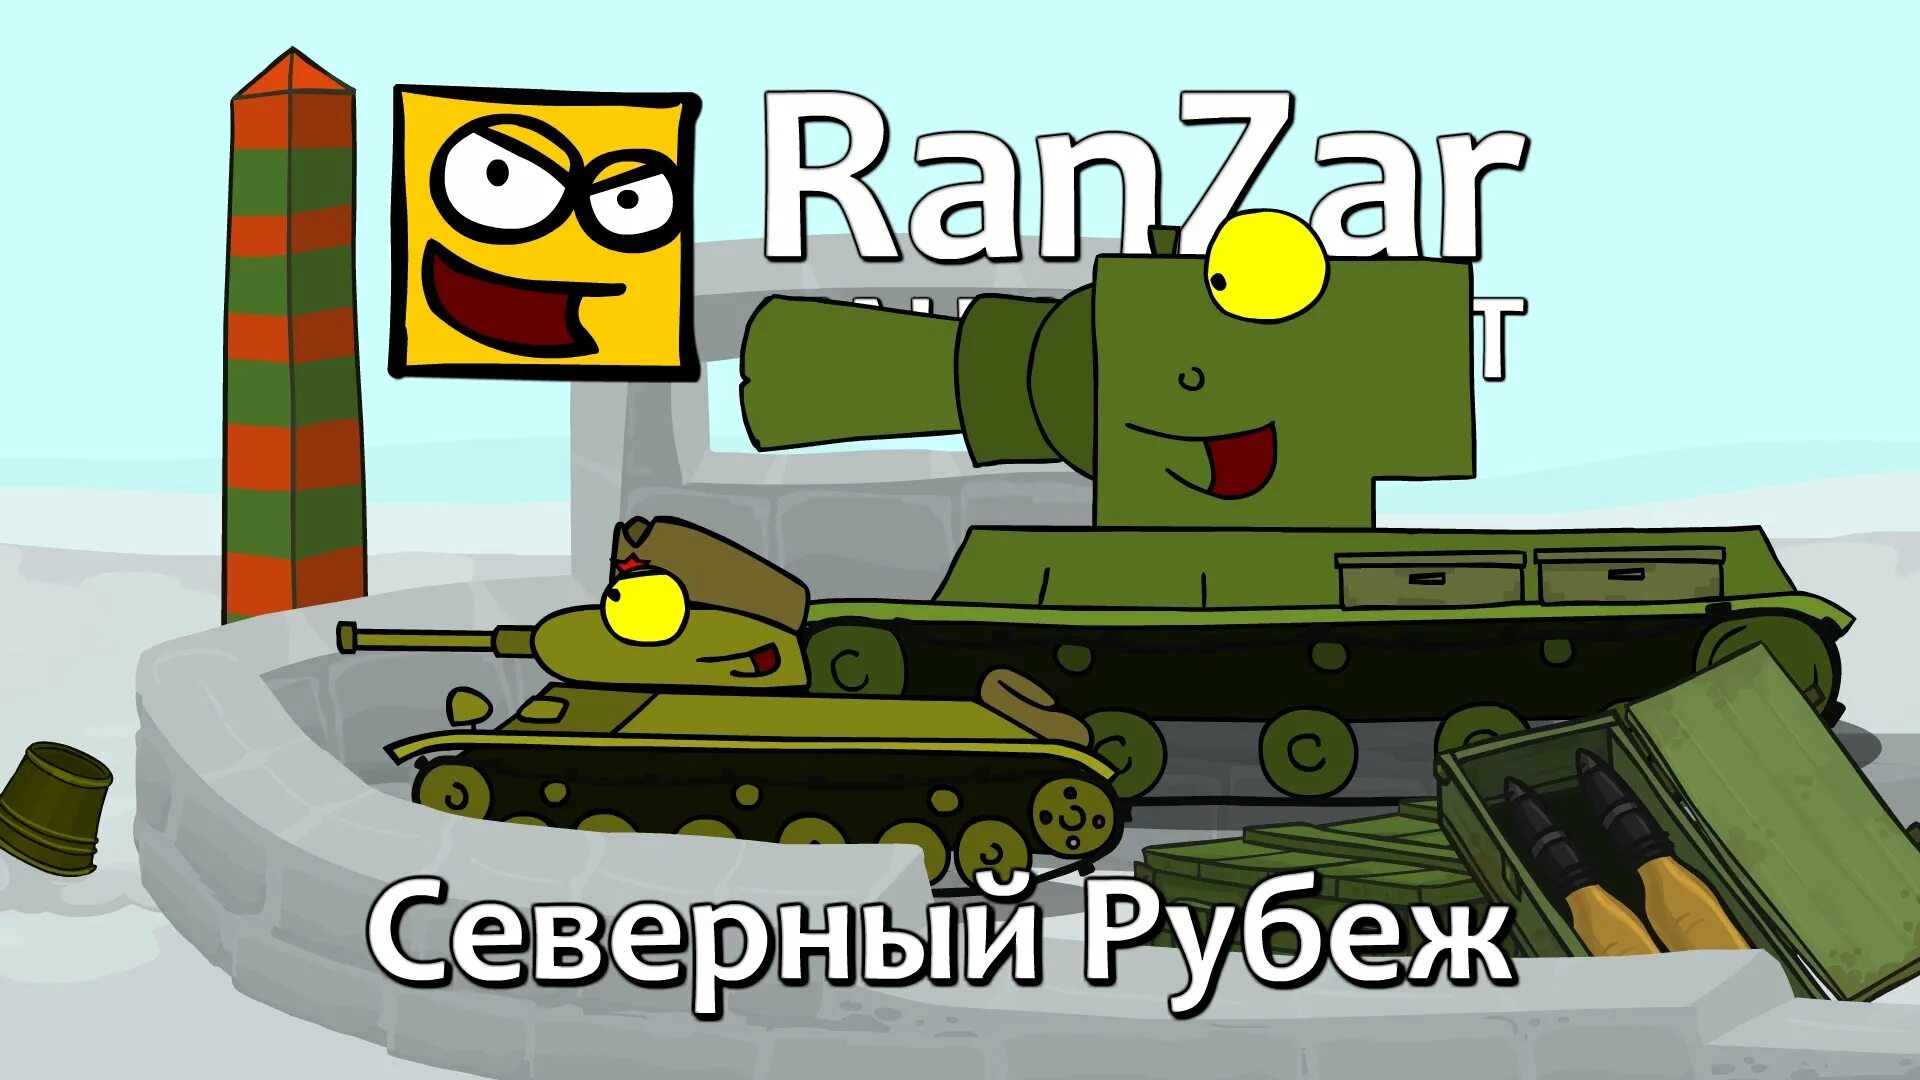 Colouring happy ranzar tanks